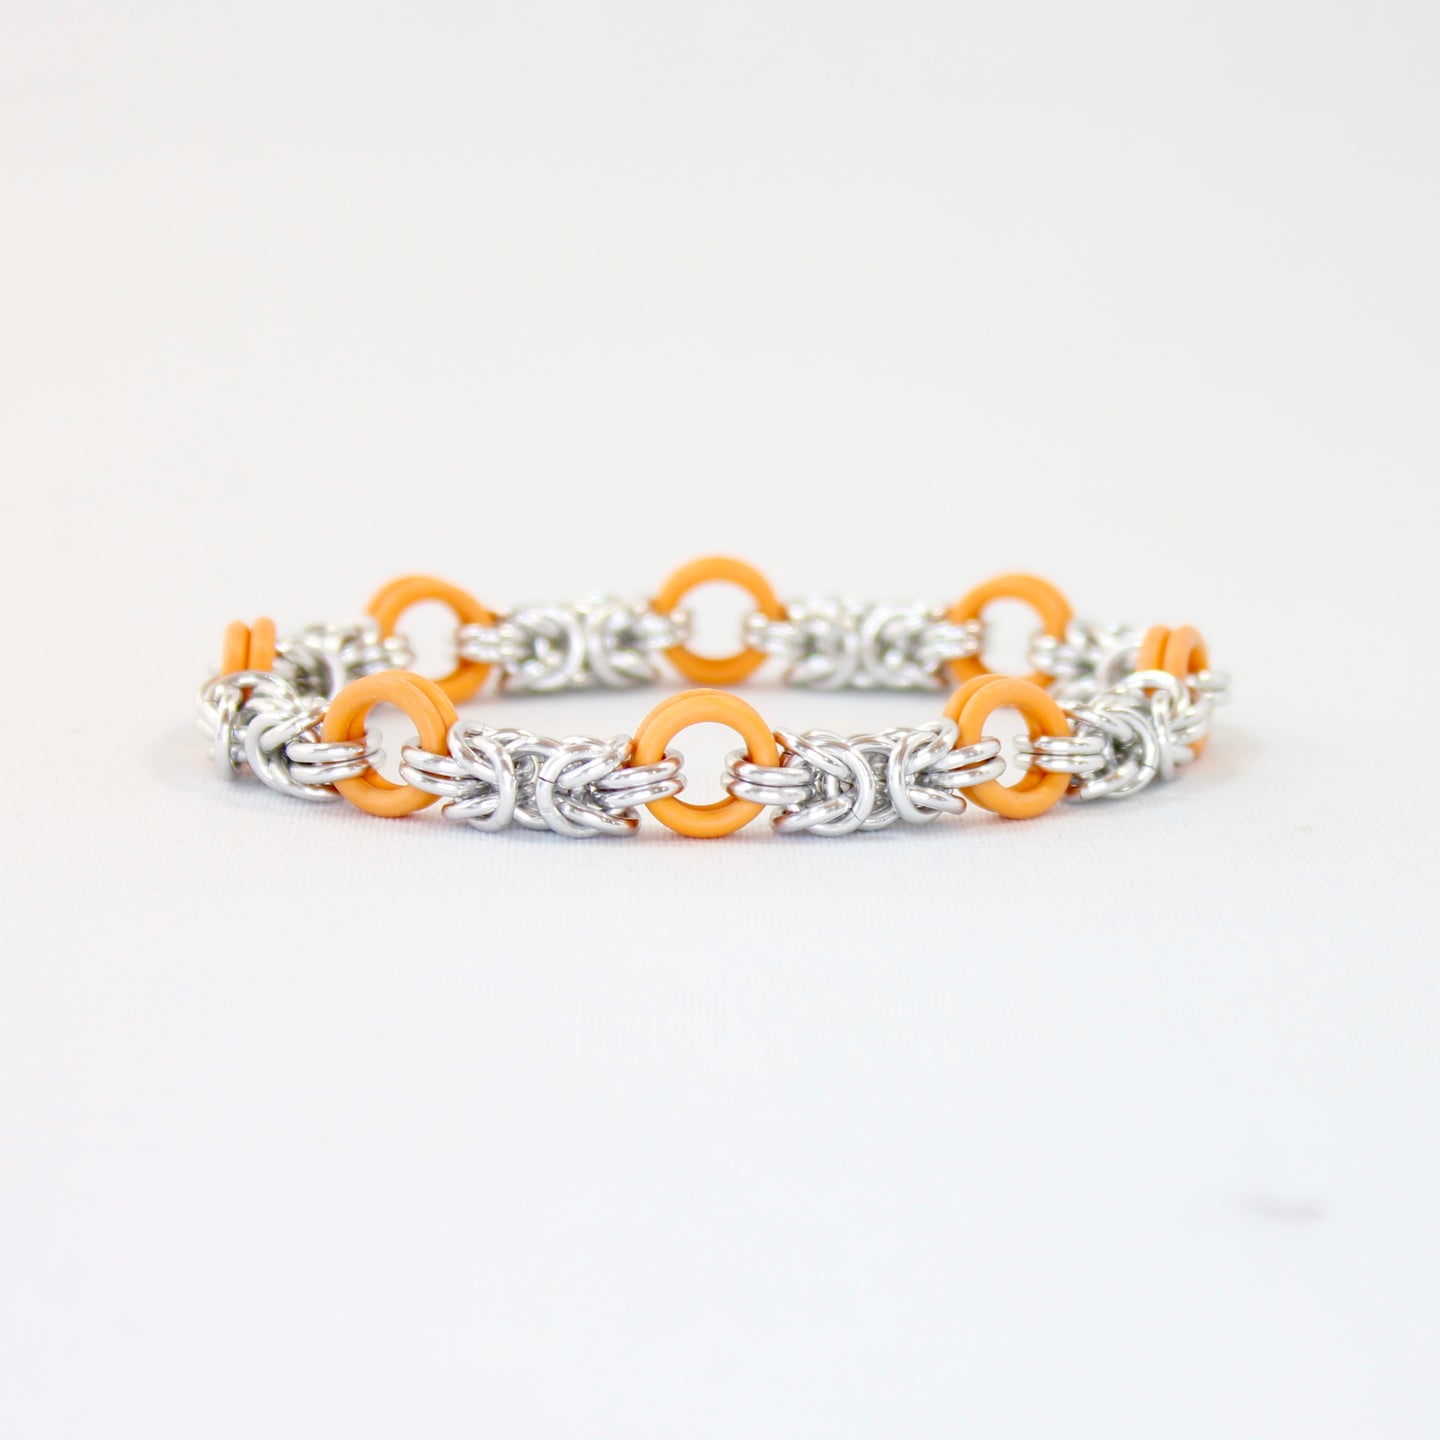 The Byz Stretch Bracelet in Orange + Silver